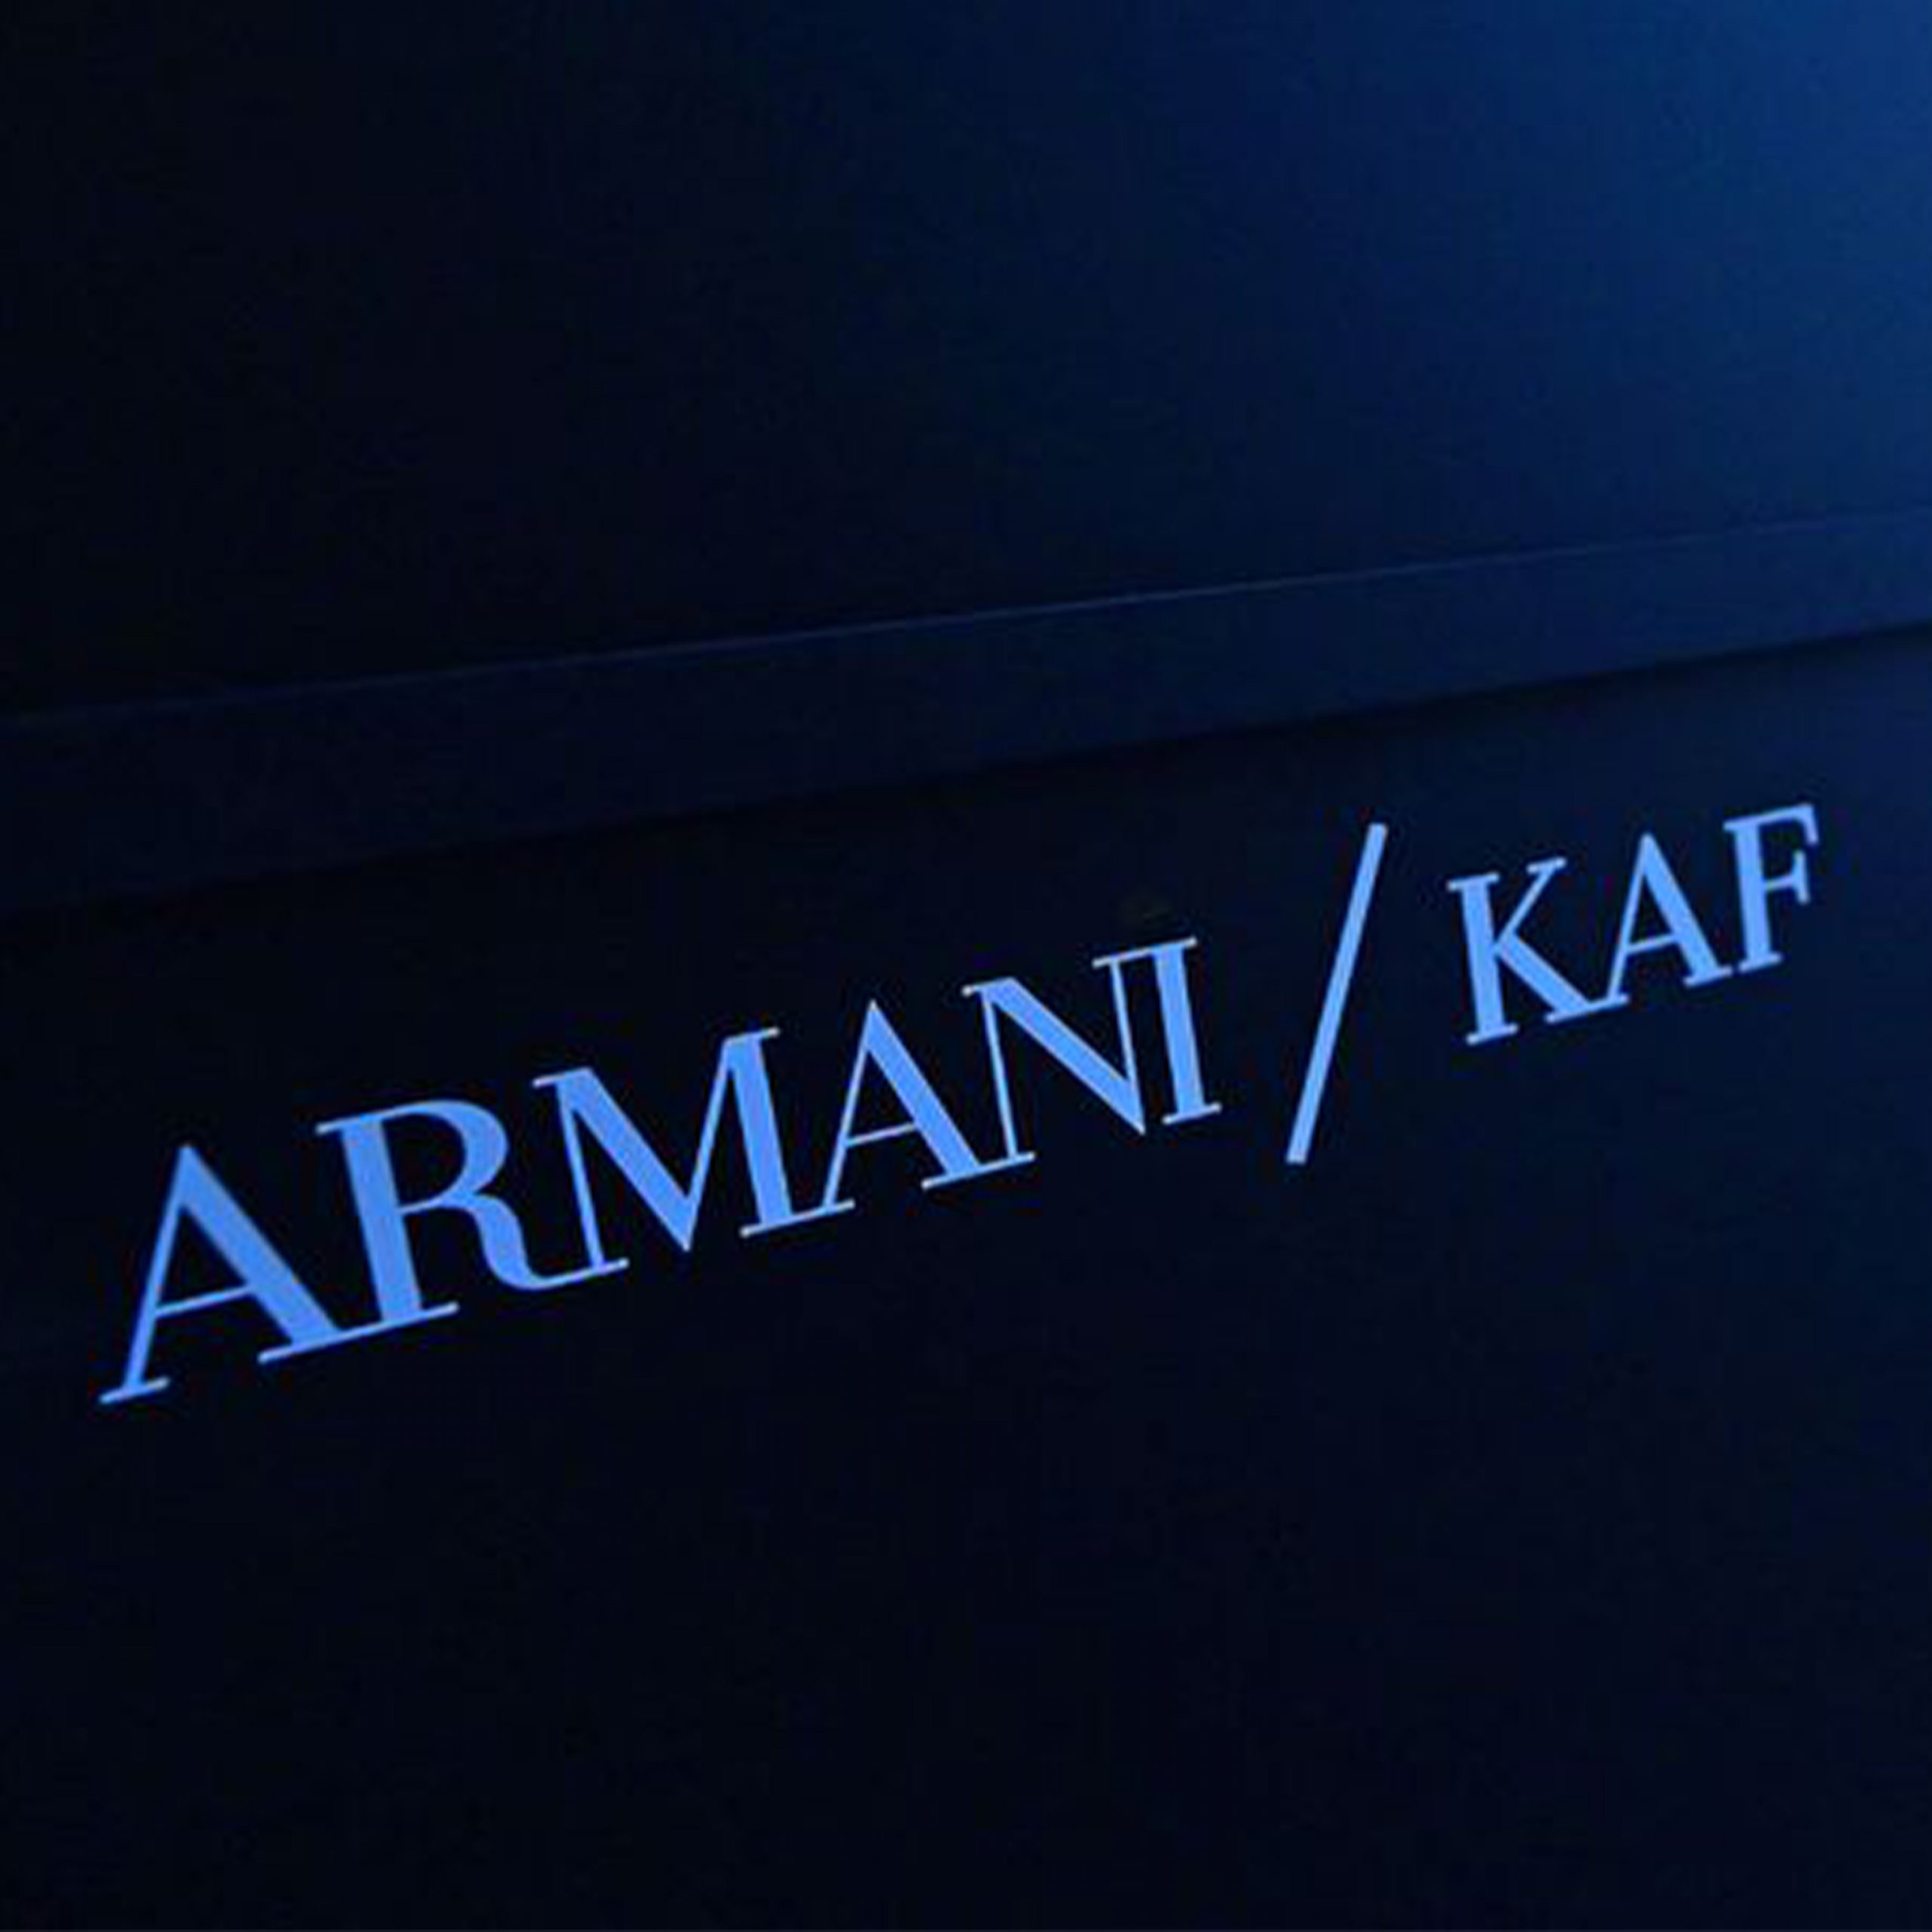 Armani/Kaf in Downtown Dubai